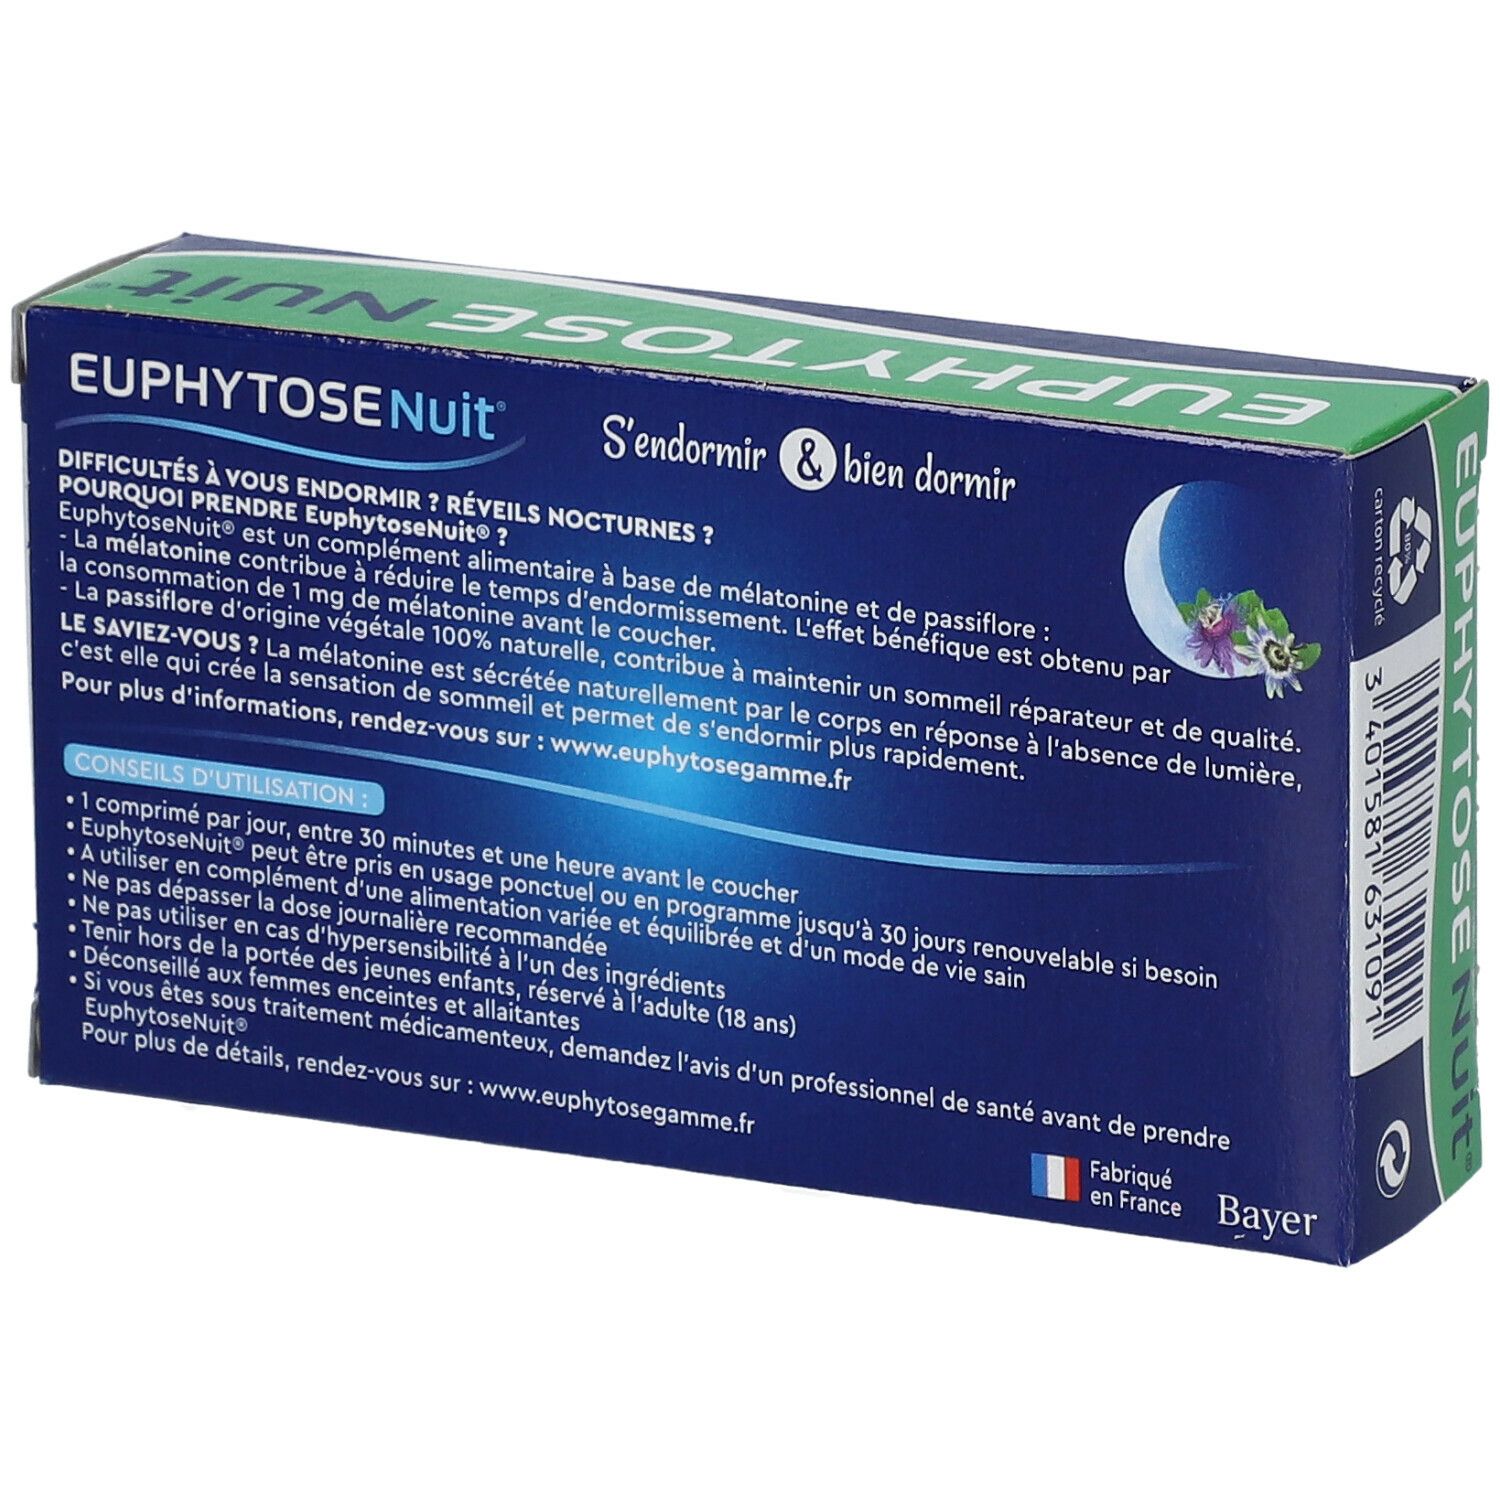 Promotion Euphytose nuit - Pharmacie en ligne